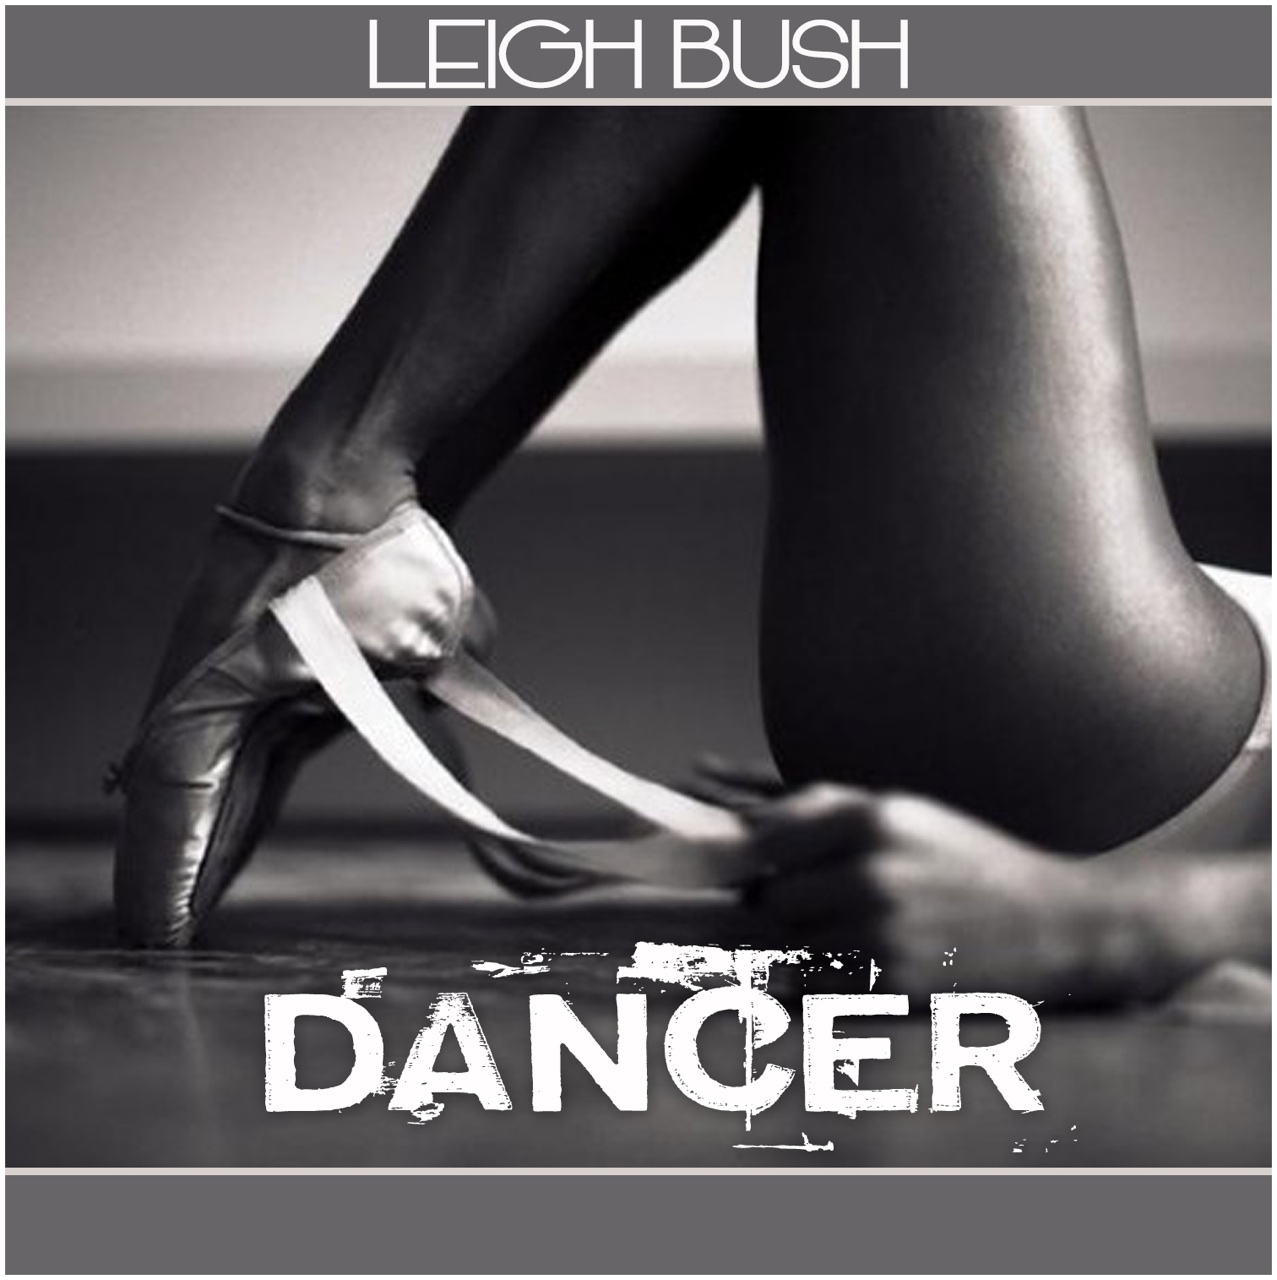 Leigh Bush “Dancer” (Video)